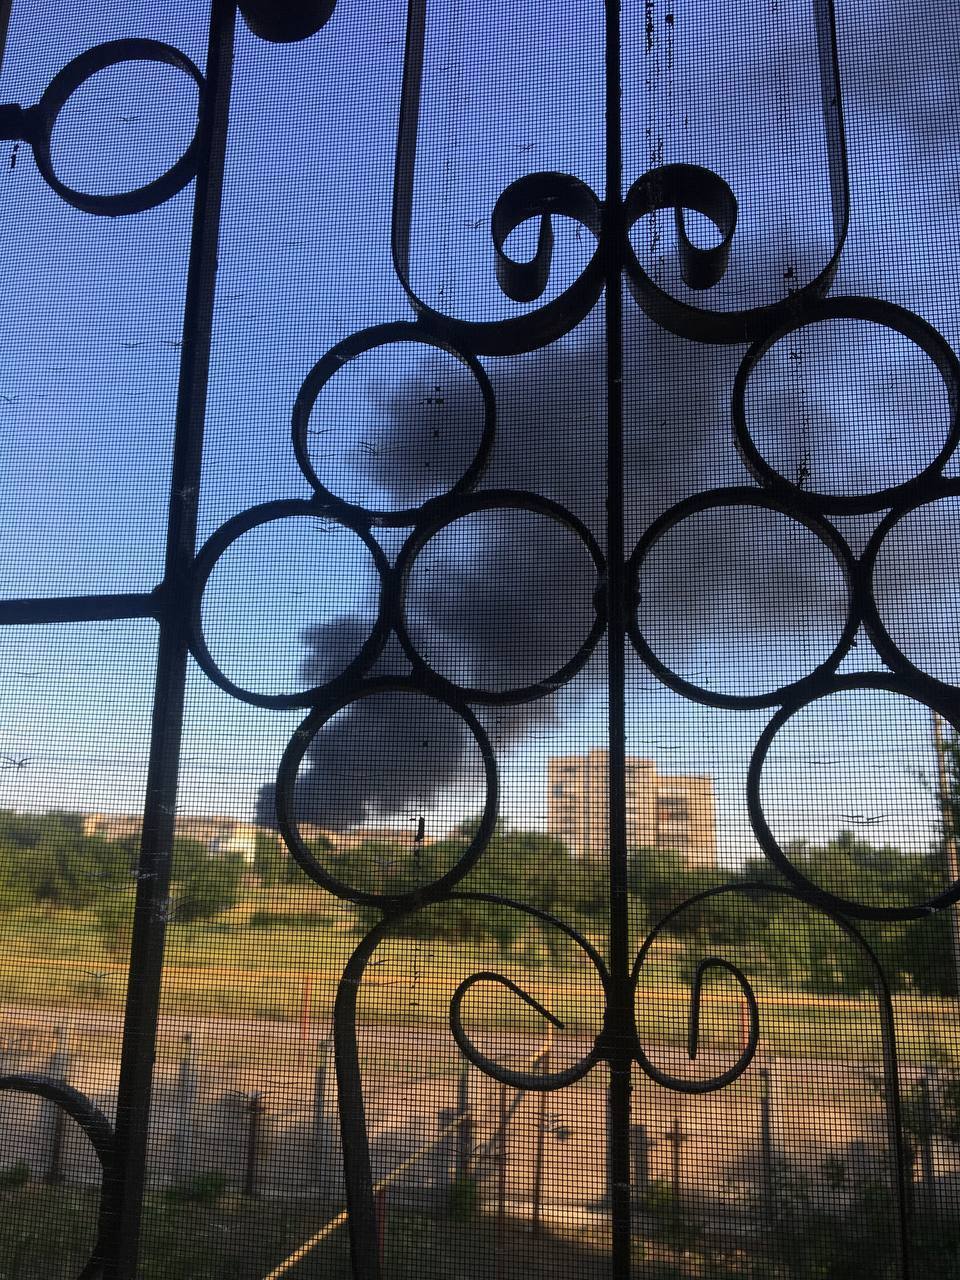 В оккупированном Донецке горит нефтебаза